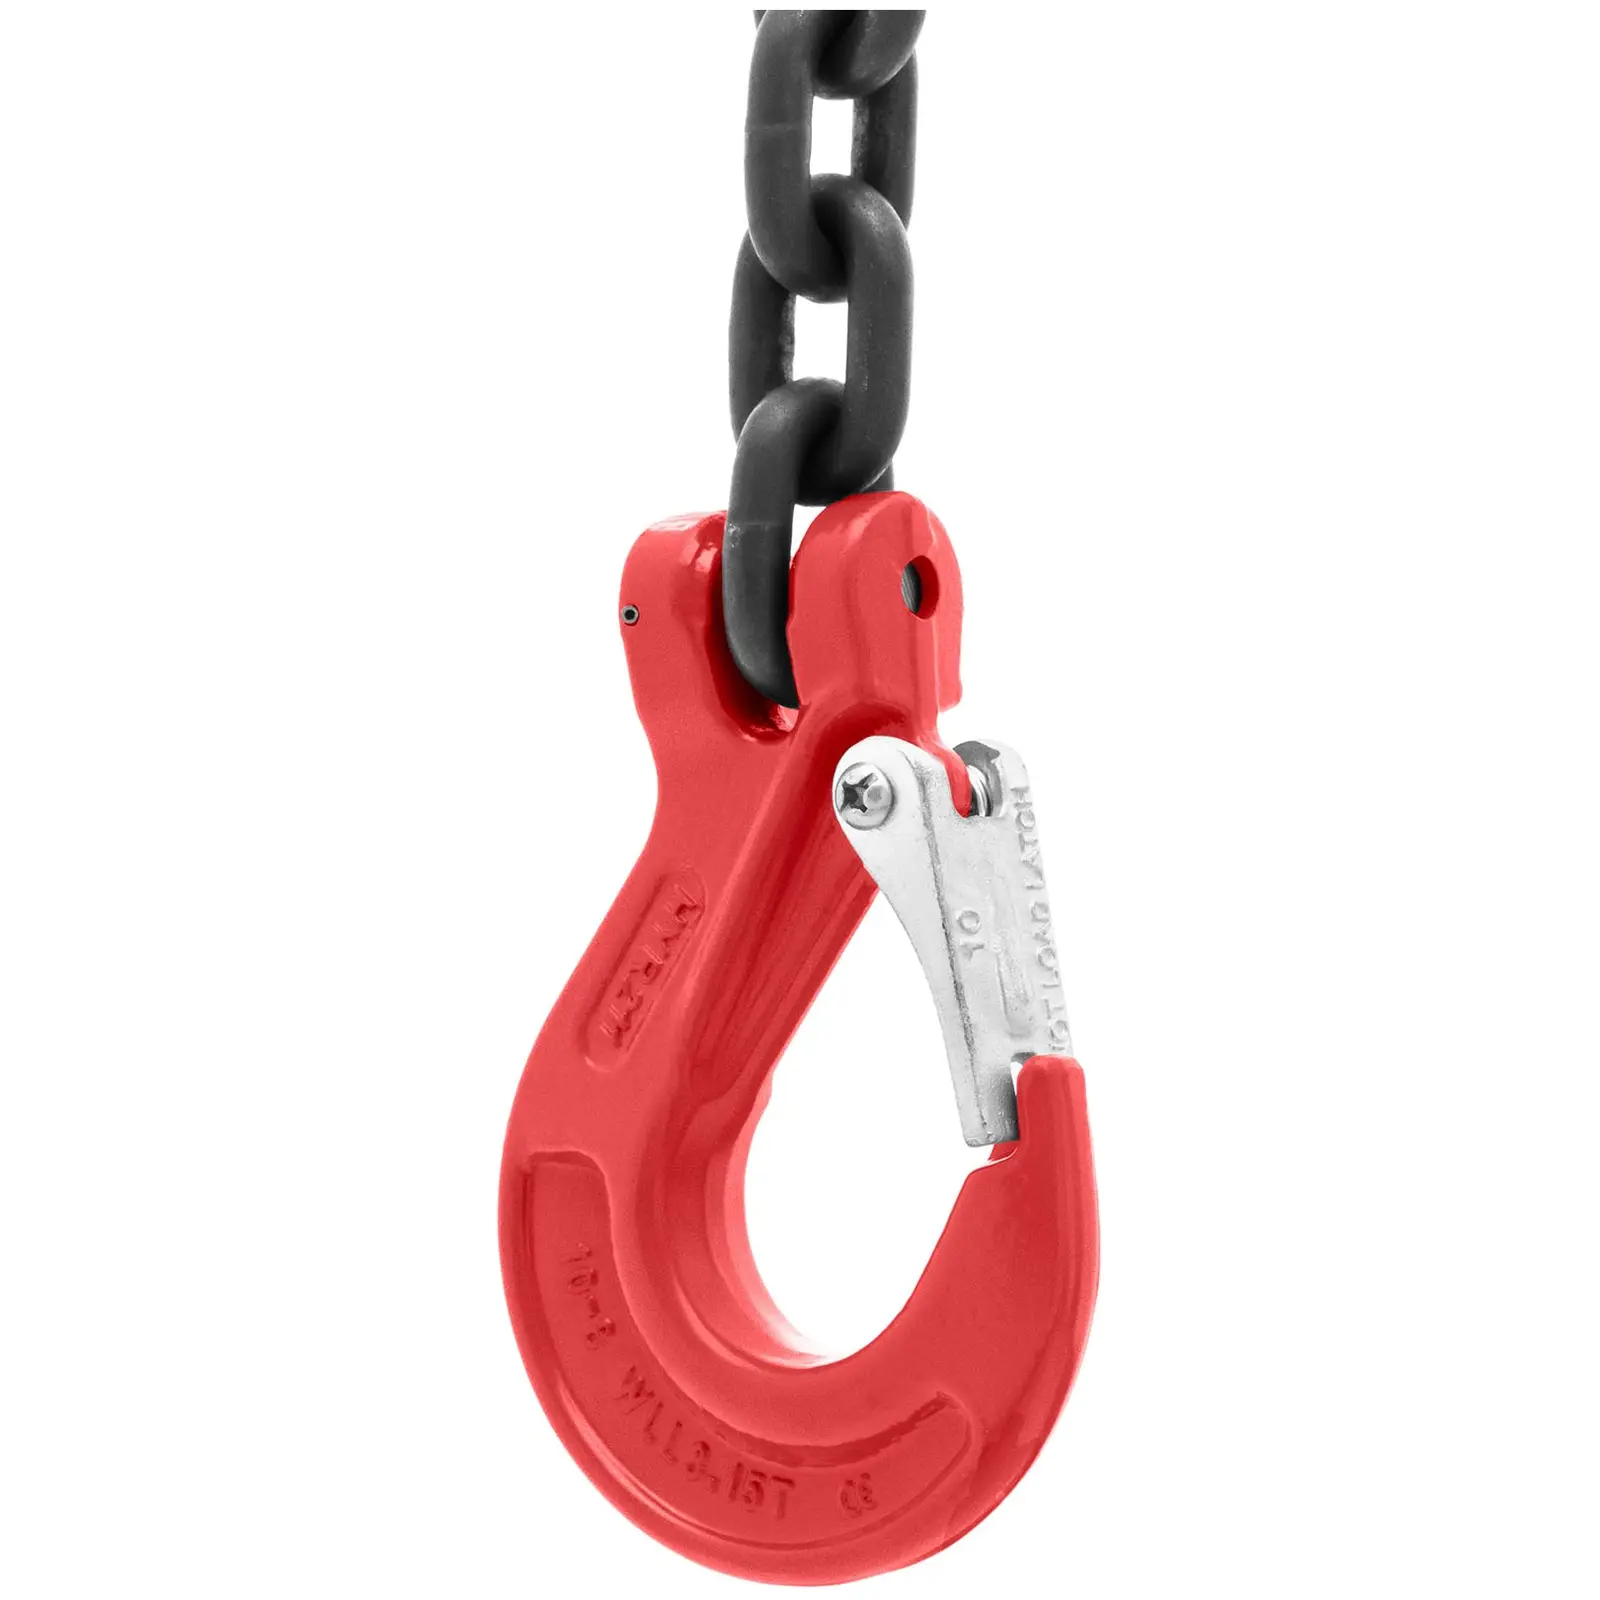 Imbracatura a catena - 3.150 kg - 1 m - Nera, rossa